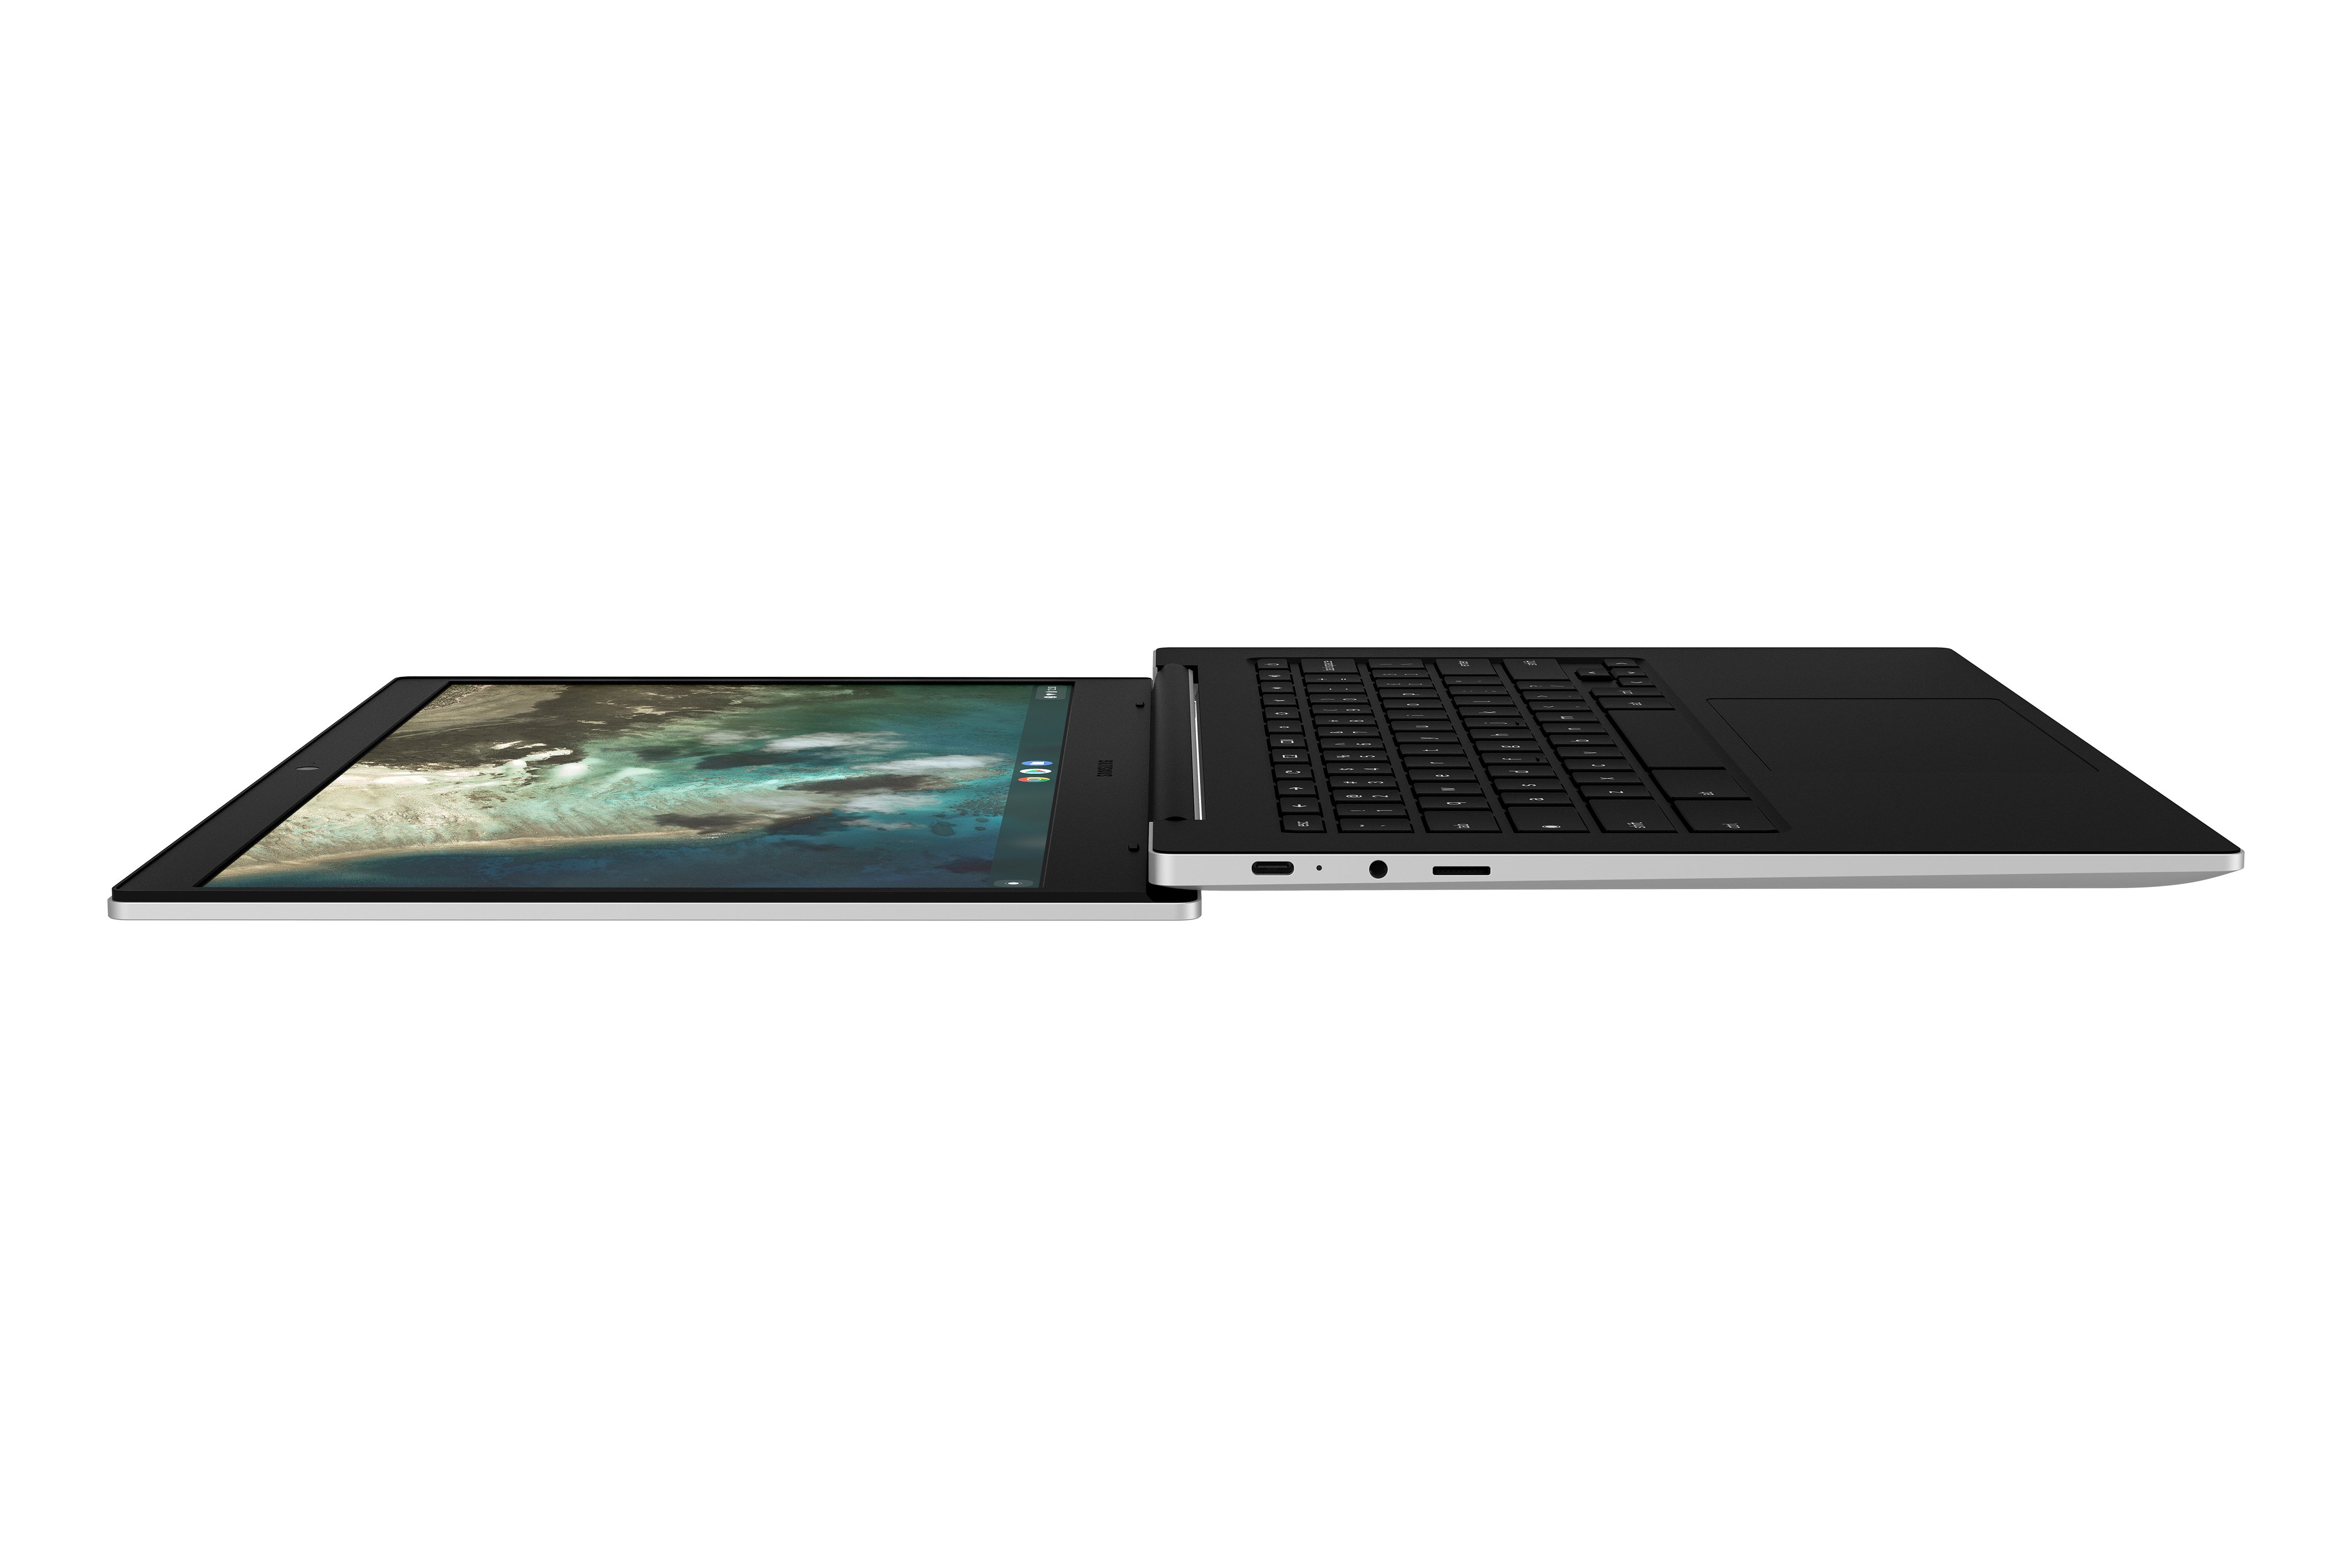 Samsung lặng lẽ giới thiệu Galaxy Chromebook Go với màn hình 14 inch, CPU Intel Celeron 